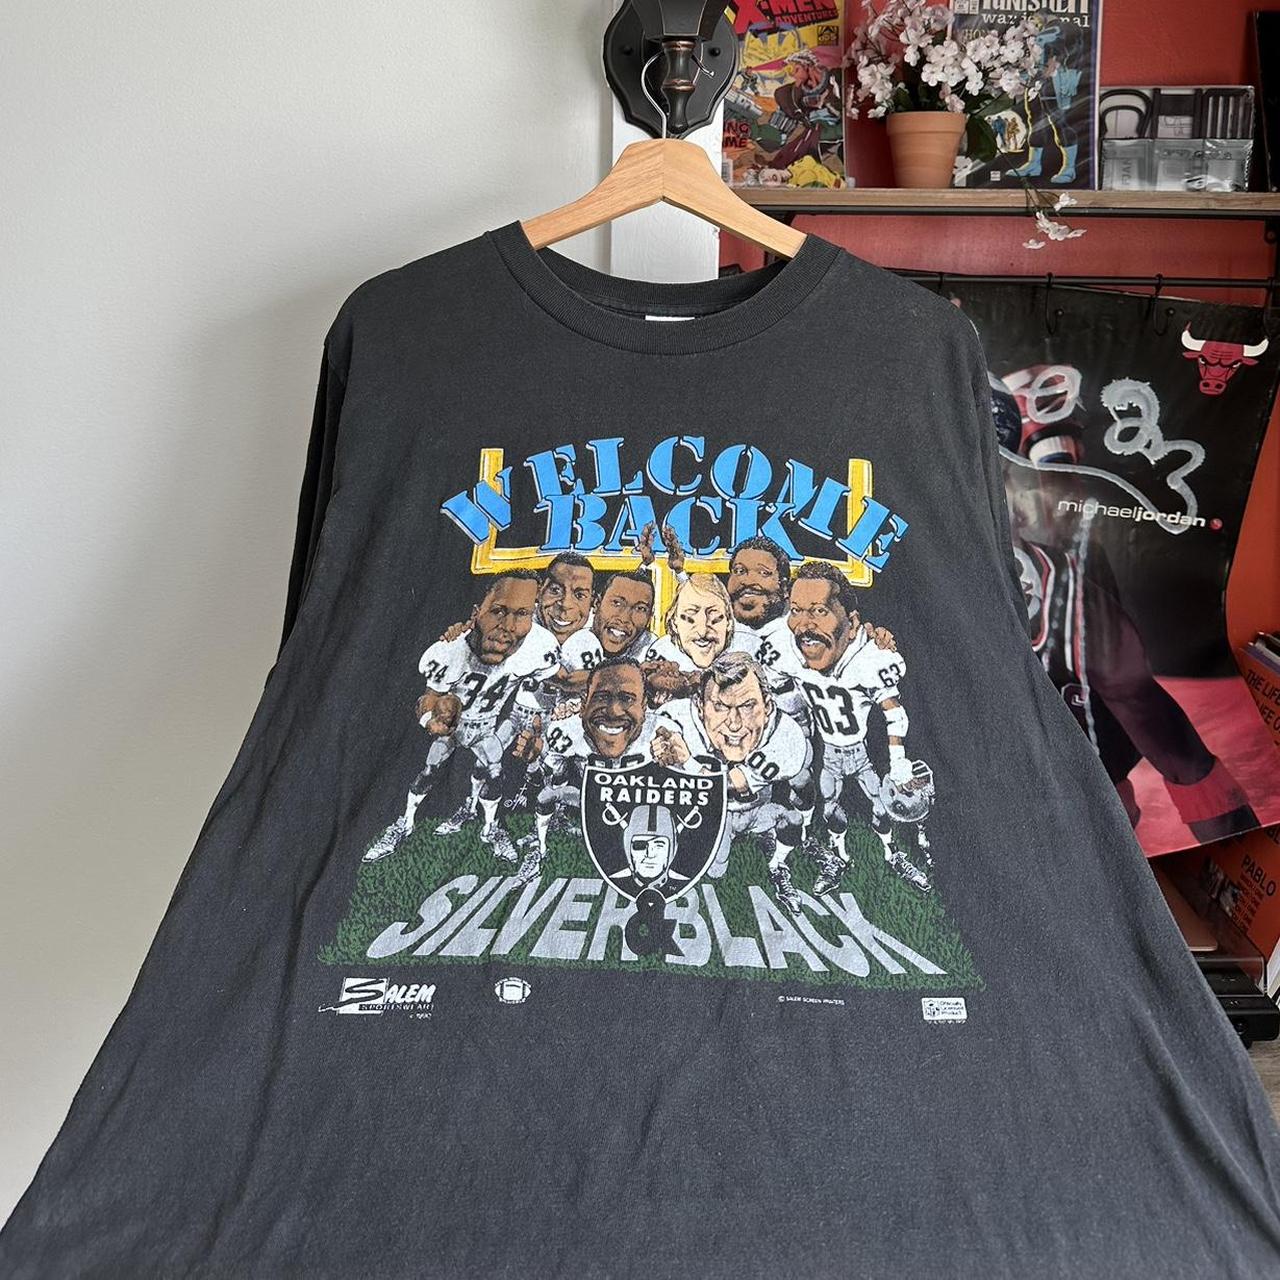 Salem Sportswear Men's T-Shirt - Black - L 